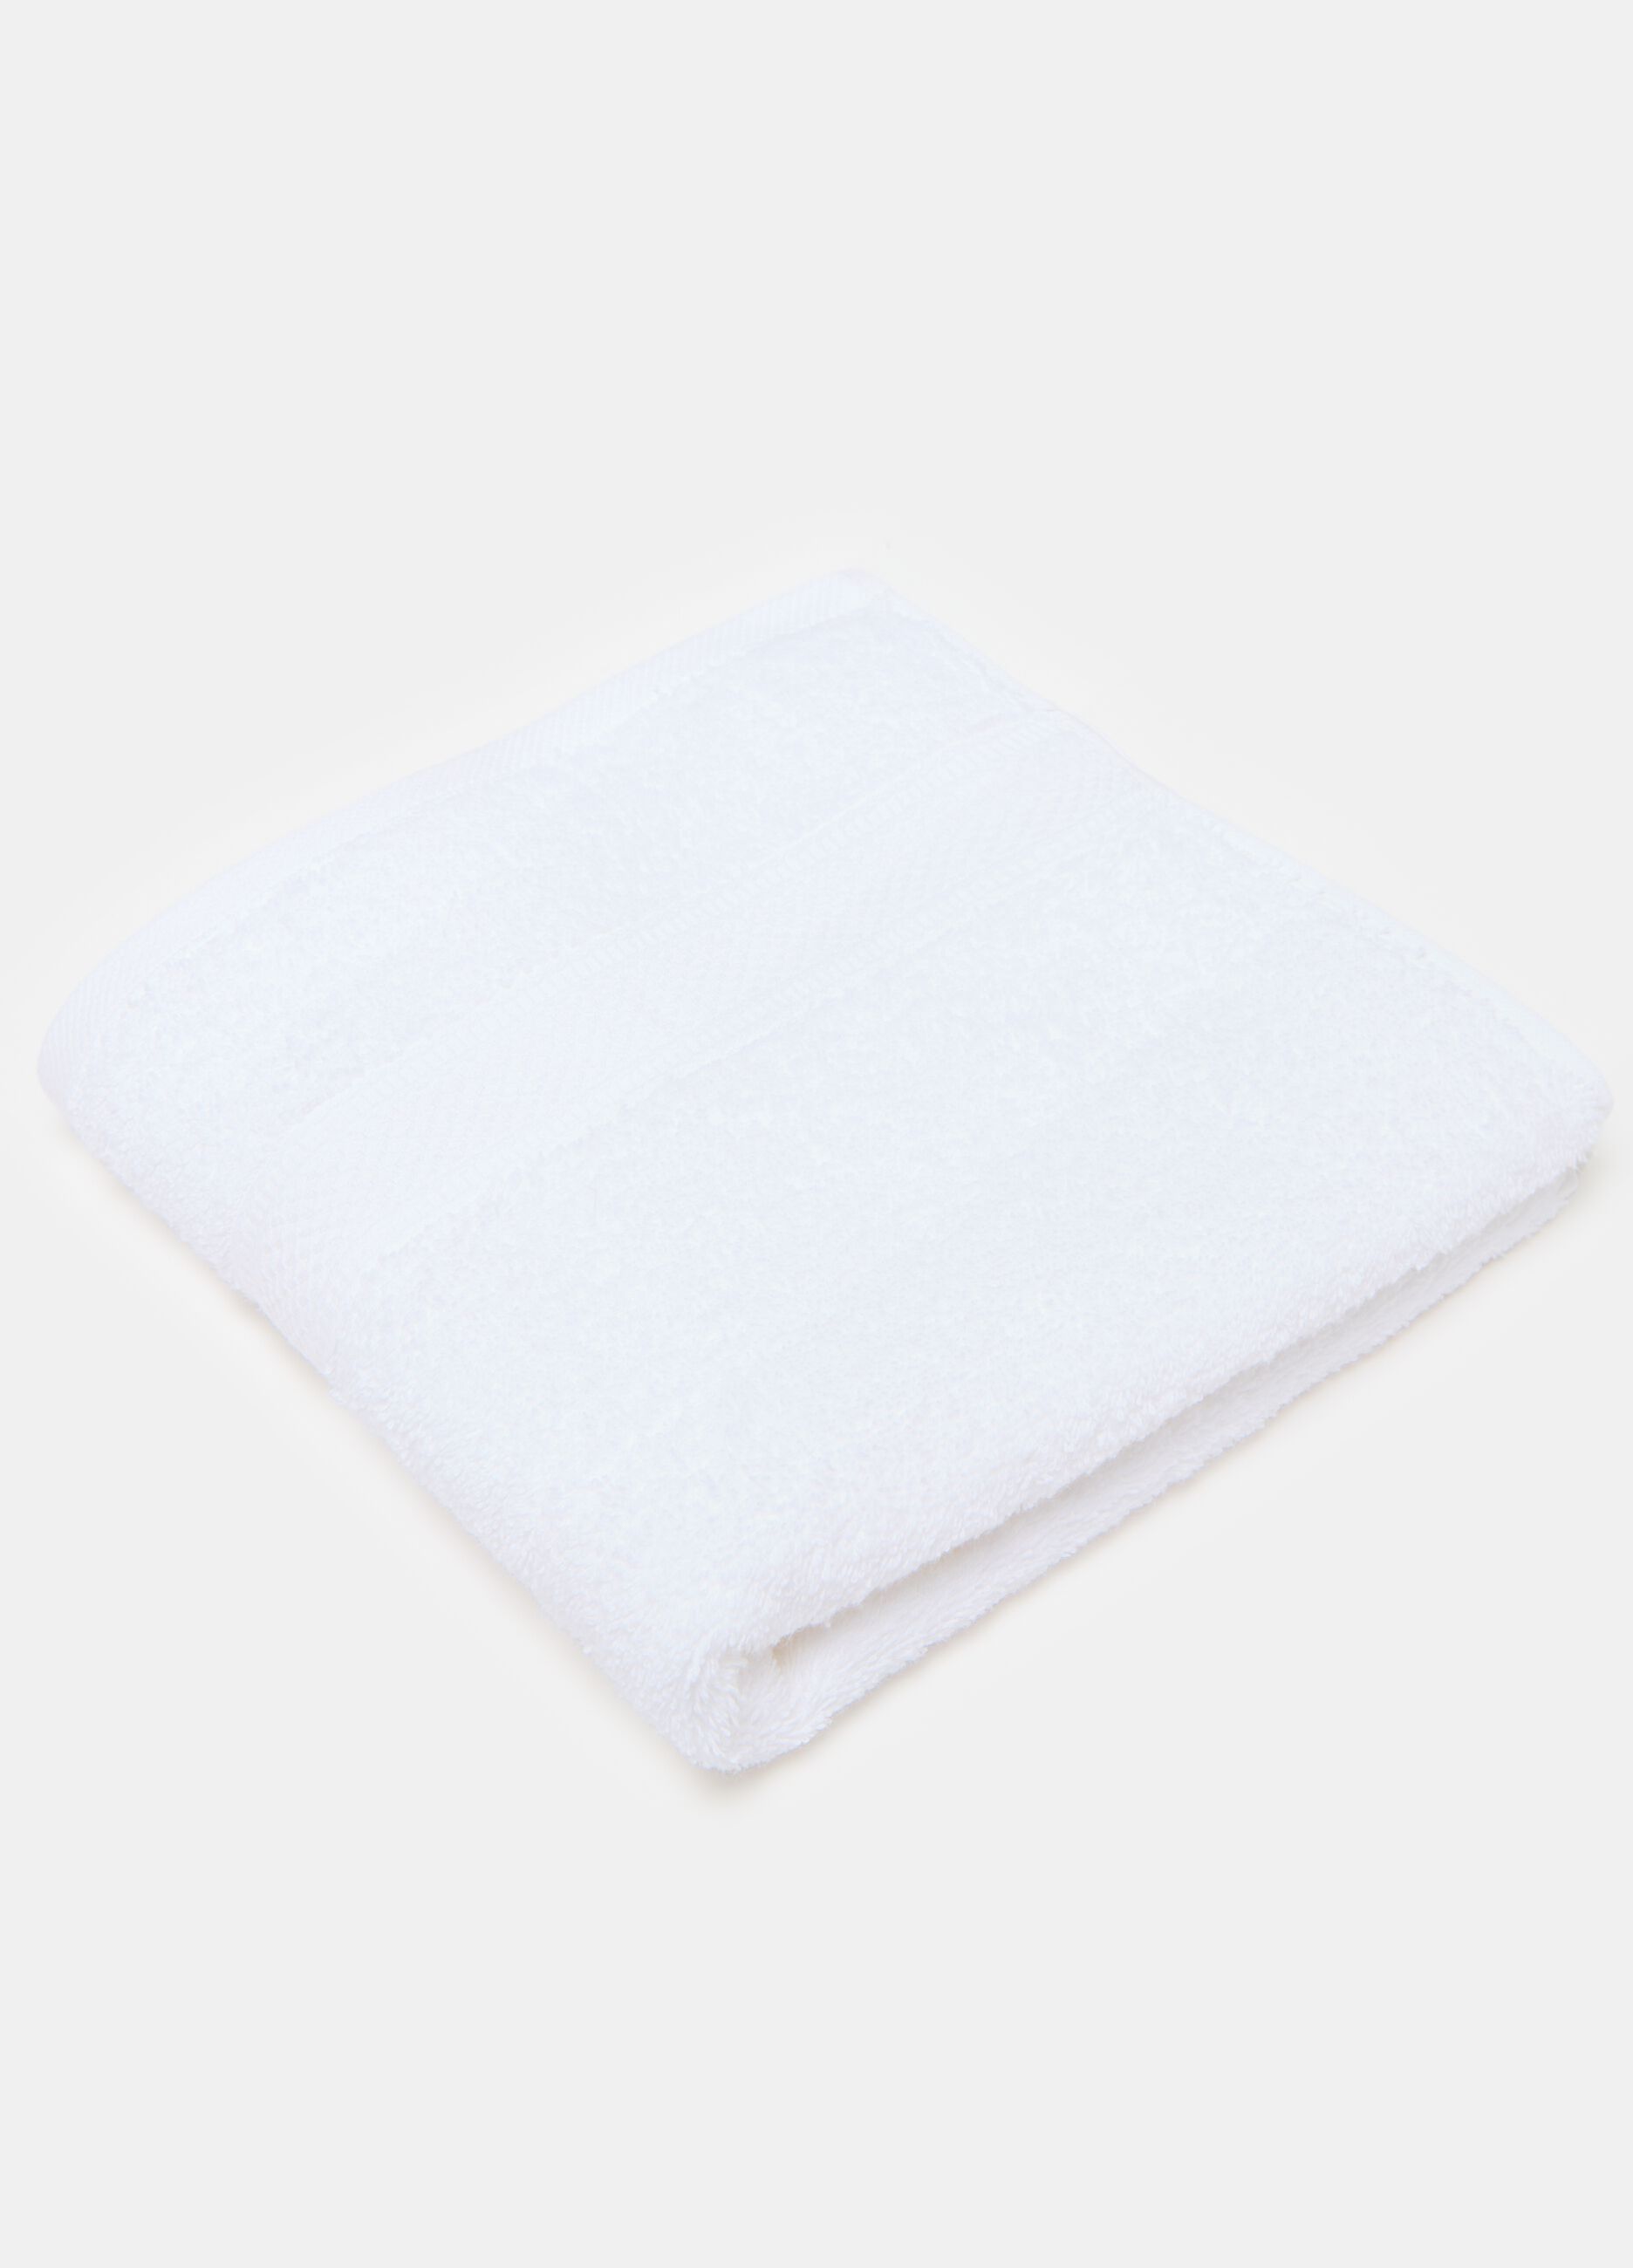 Solid colour face towel